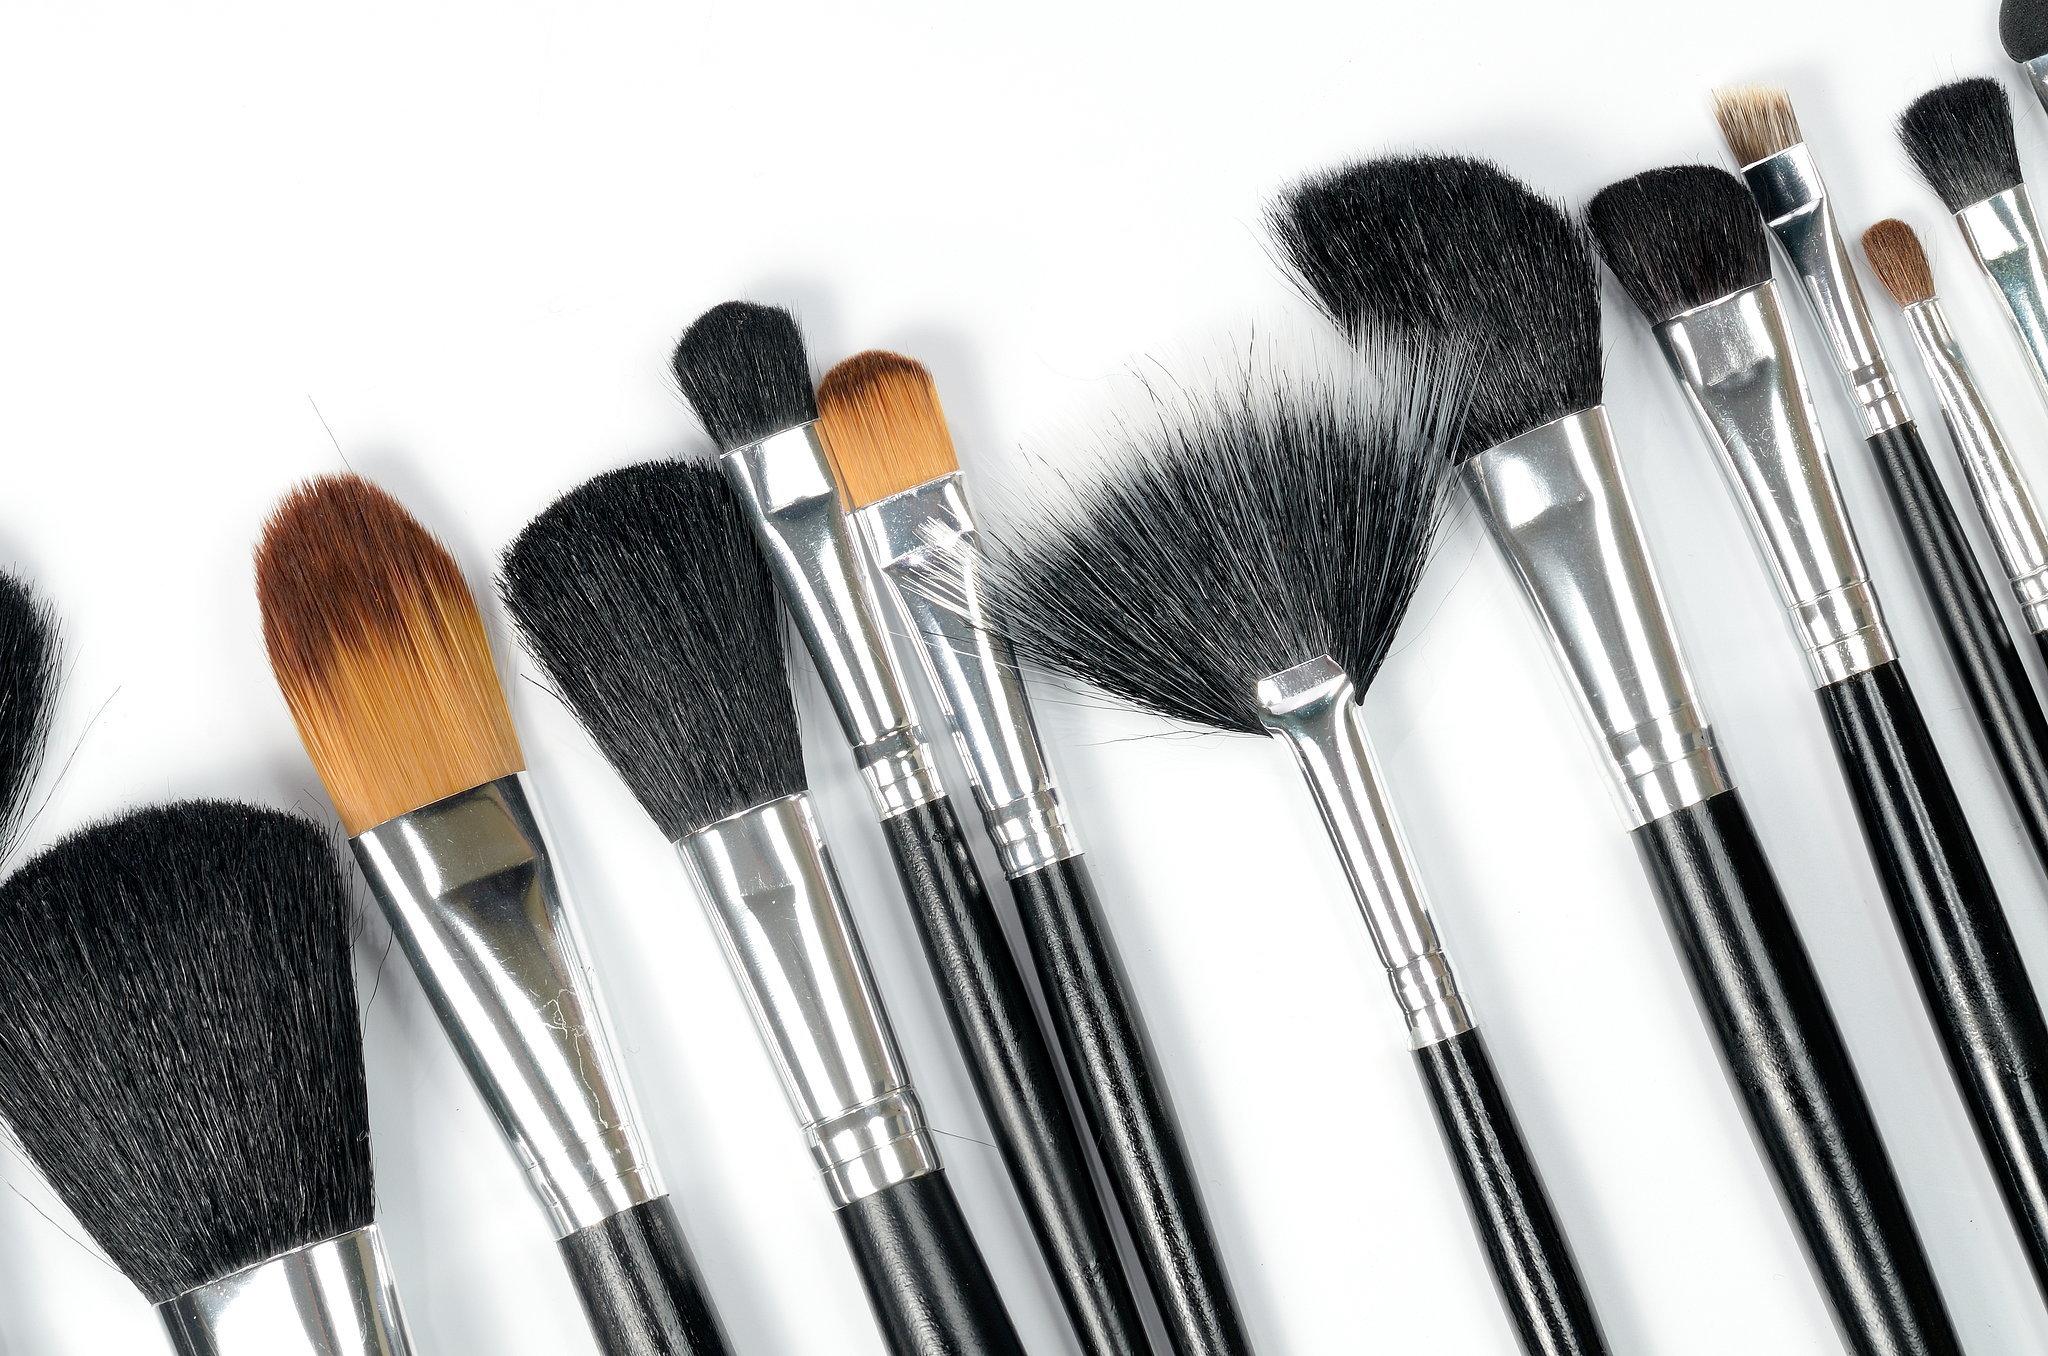 Ini 3 Merk Makeup Brush Berkualitas Untuk Pemula Dengan Harga